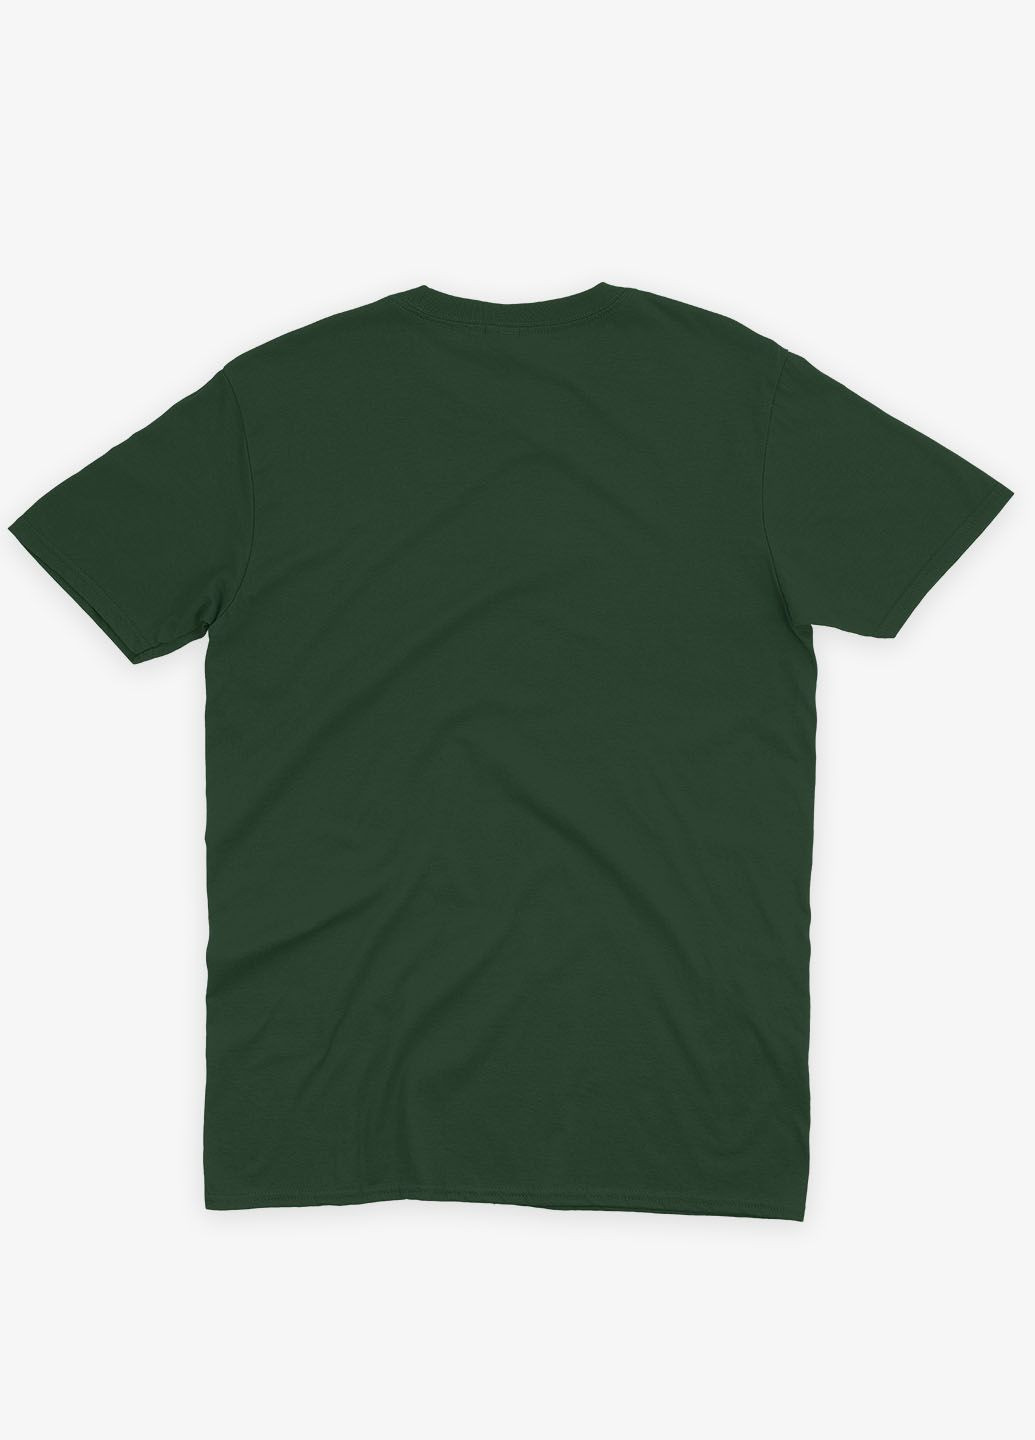 Темно-зеленая мужская футболка с патриотическим принтом ukraine (ts001-2-bog-005-1-044) Modno